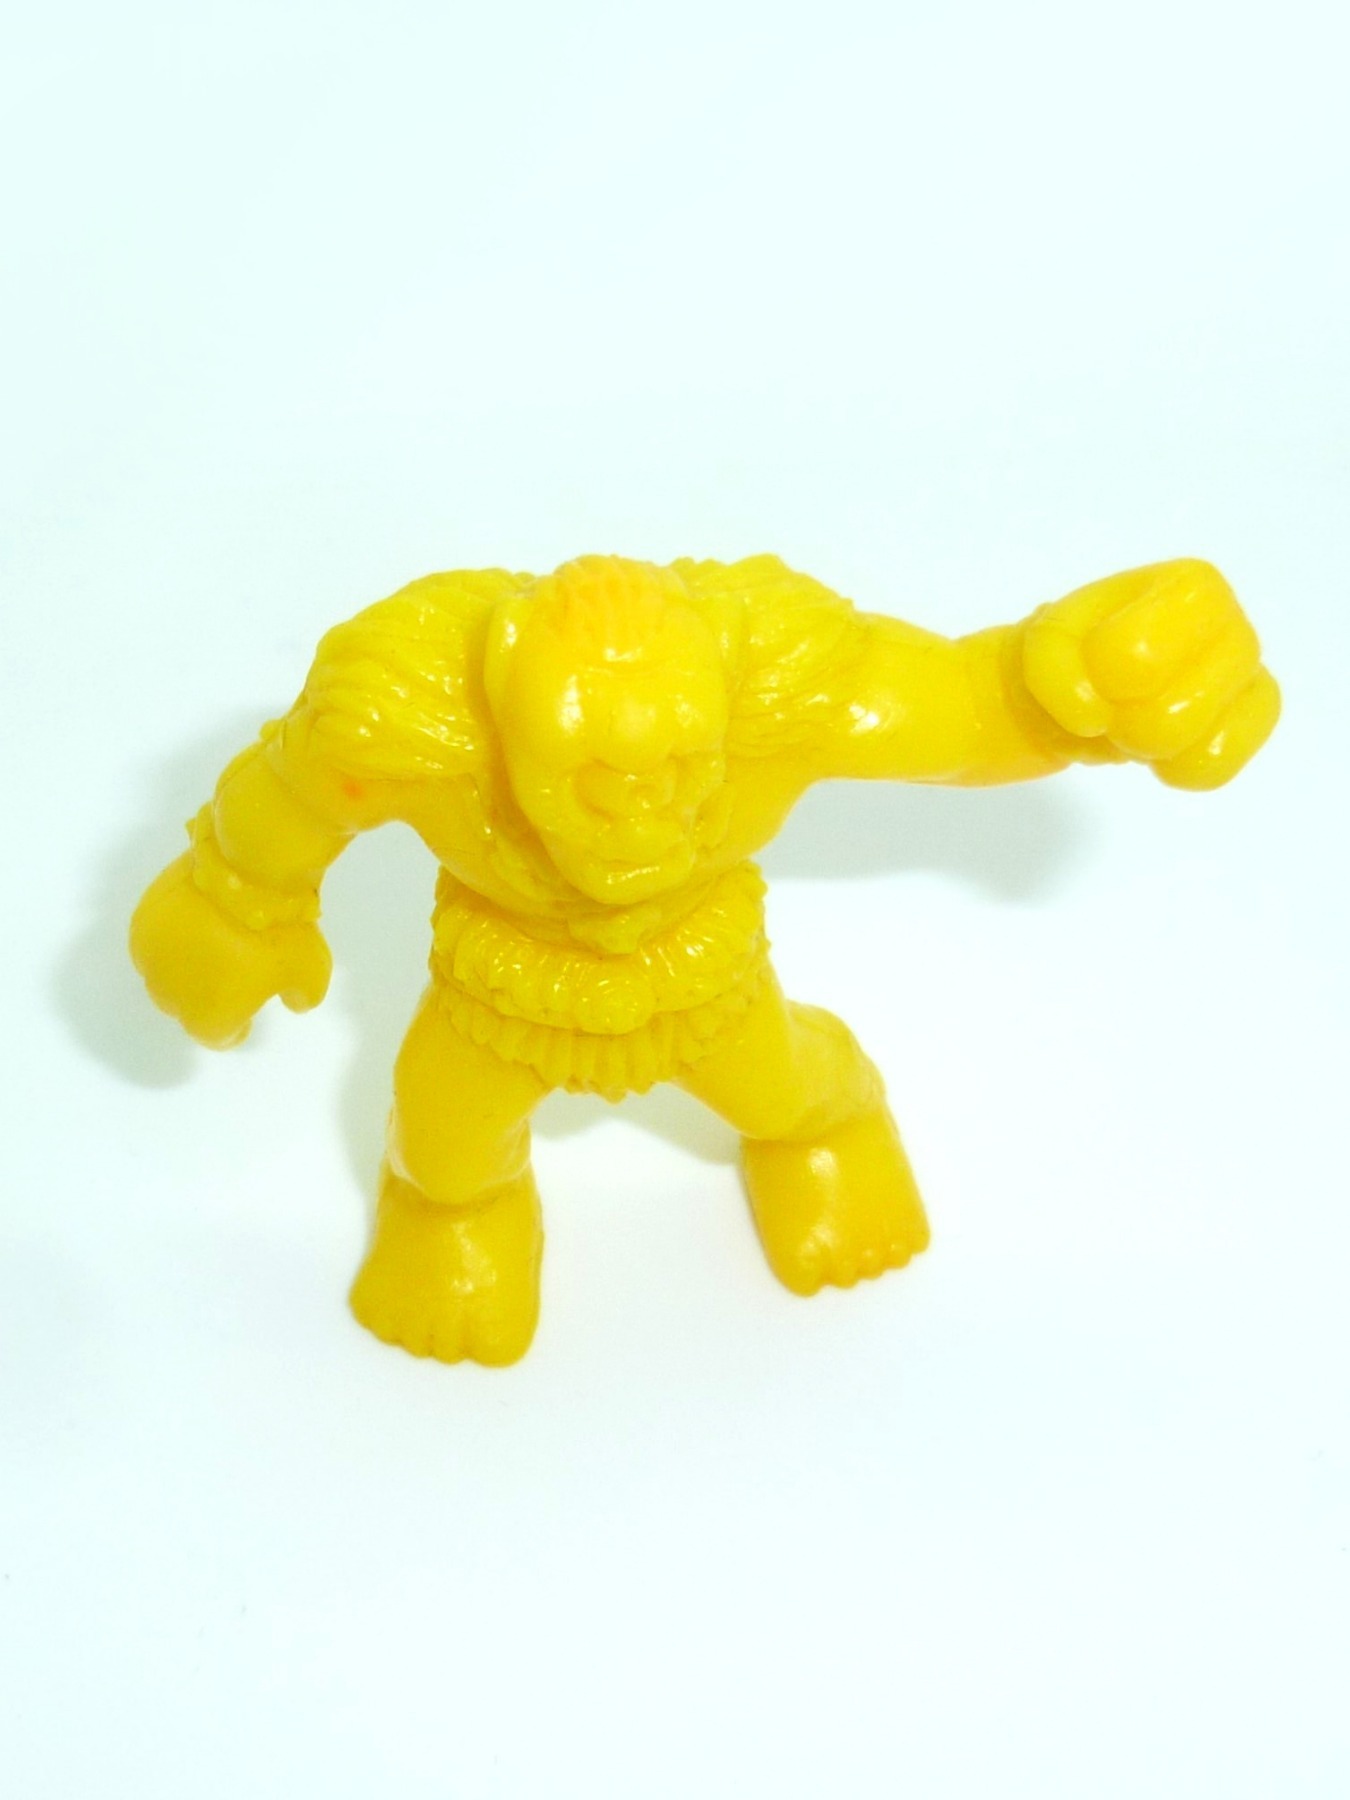 Cyclops yellow no. 8 2